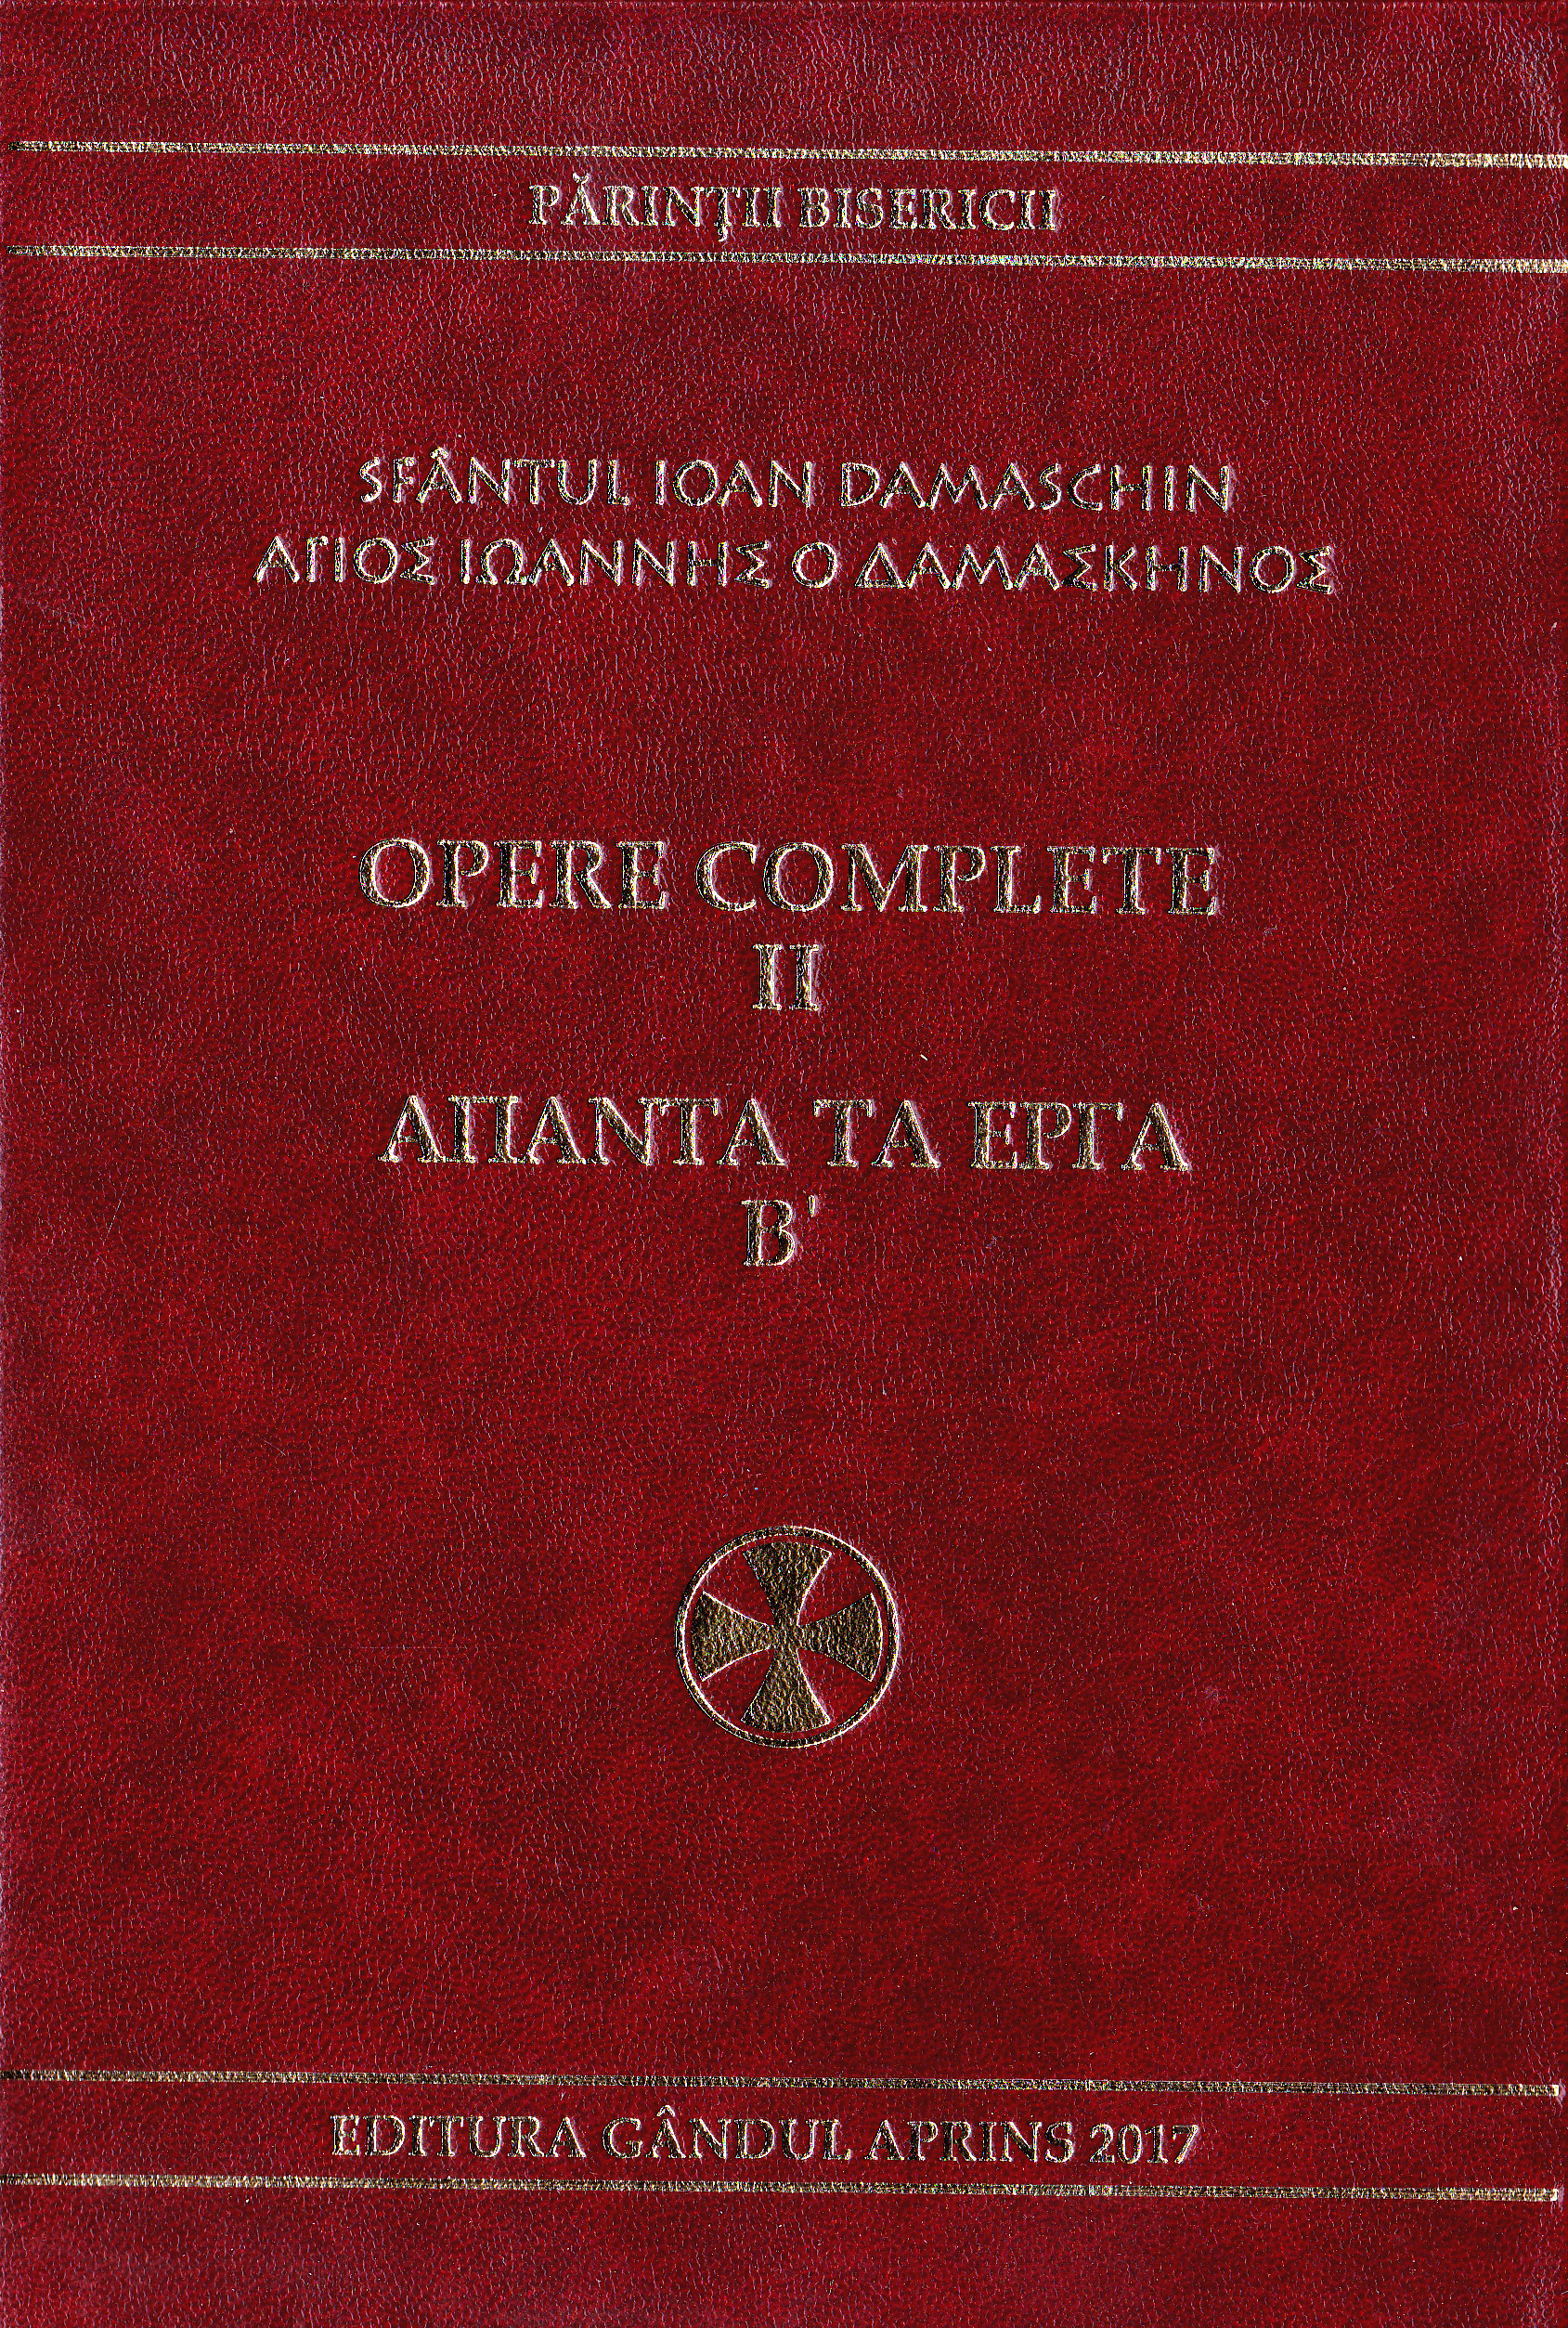 Opere complete vol.2 - Sfantul Ioan Damaschin